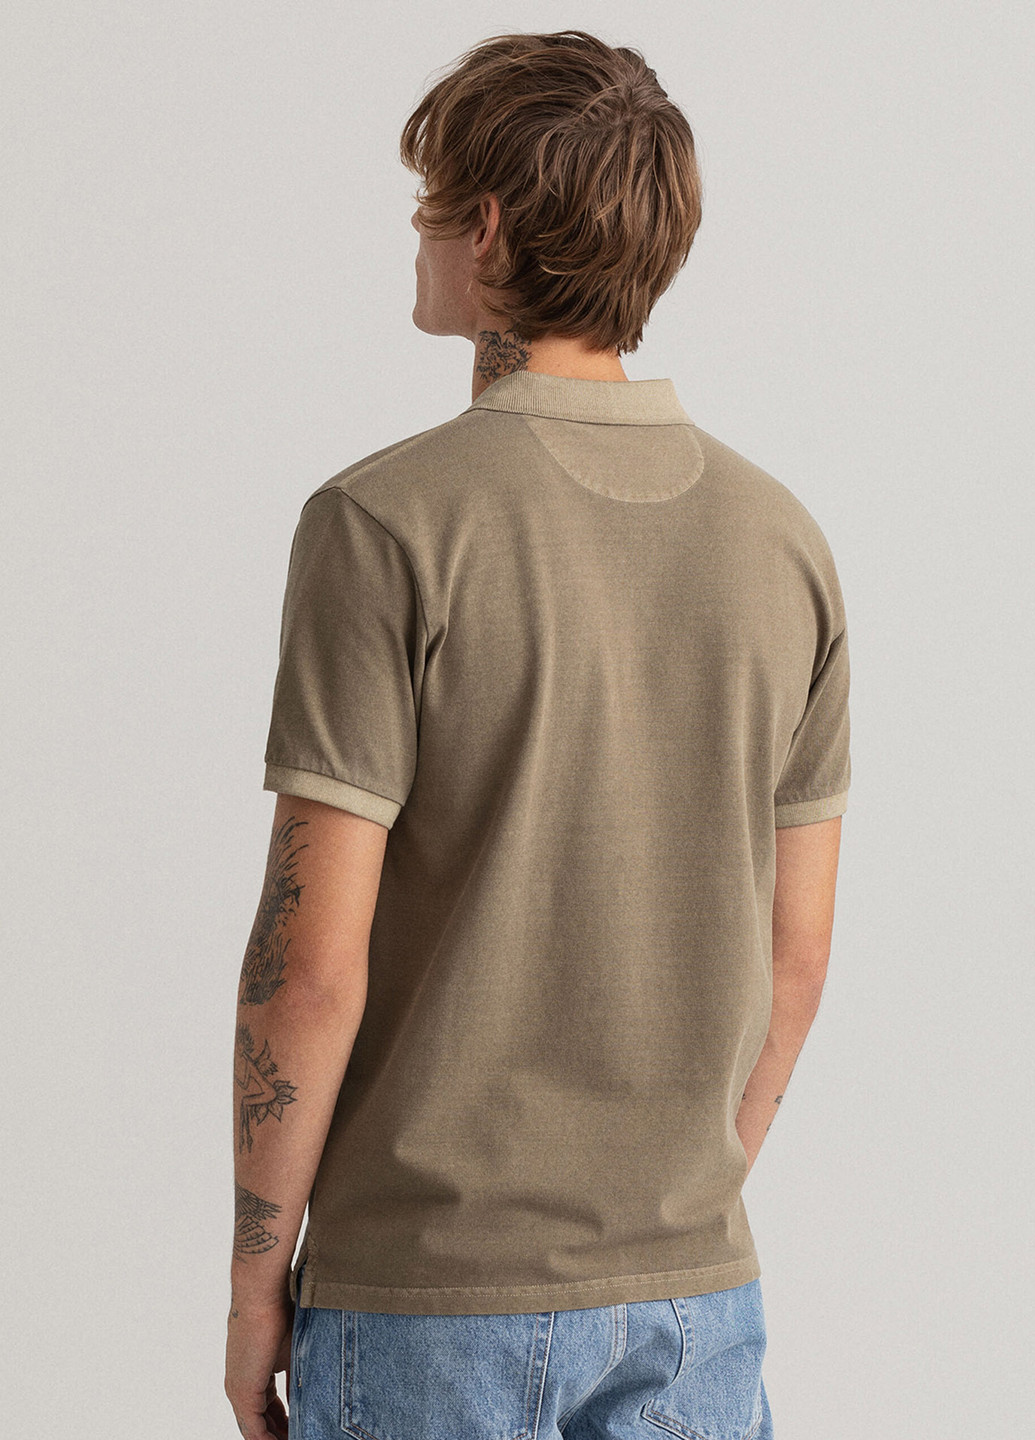 Оливковая (хаки) футболка-поло для мужчин Gant однотонная